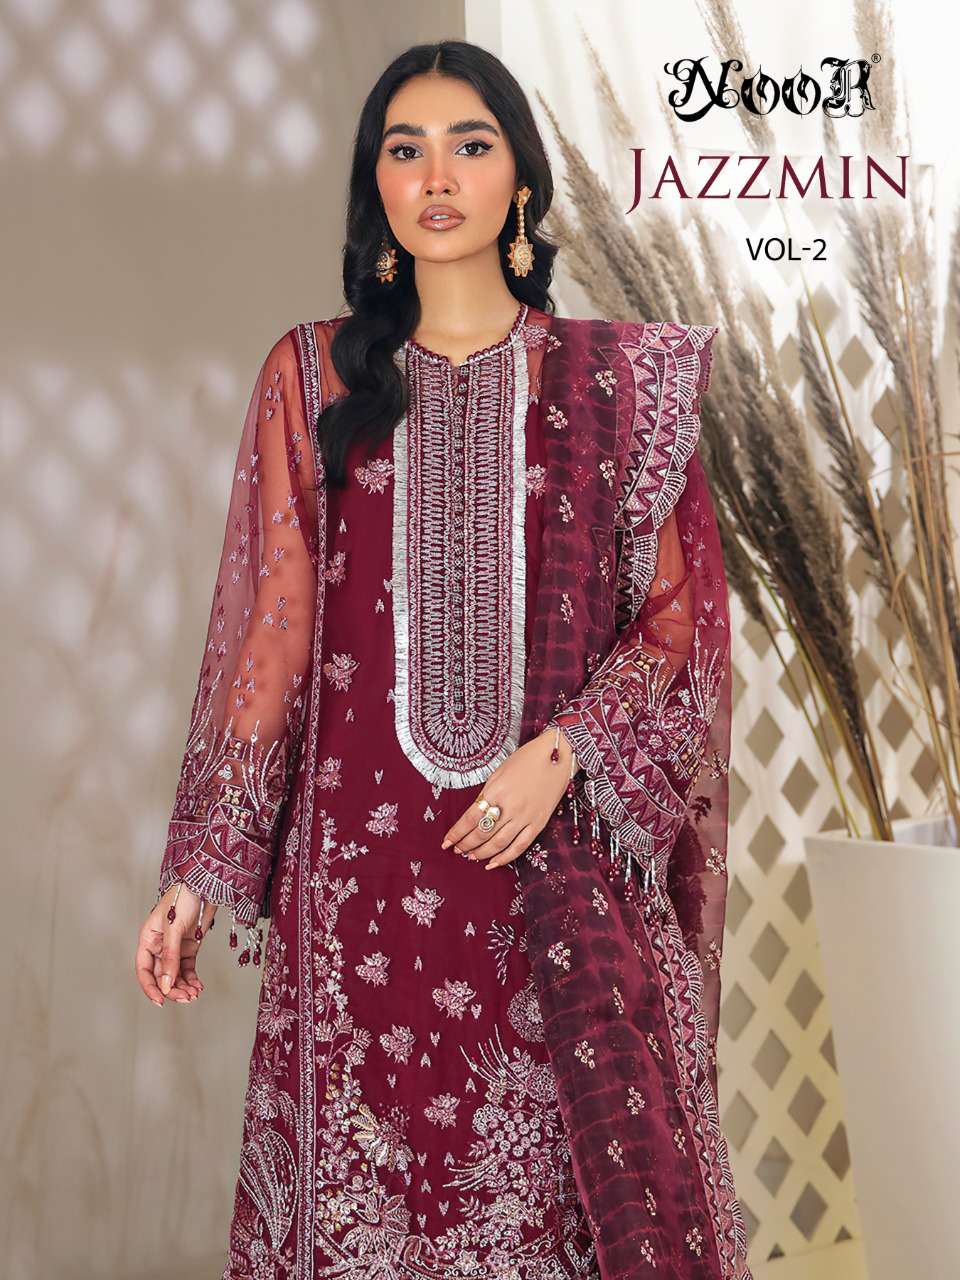 noor jazzmin vol 2 exclusive pakistani wedding suits